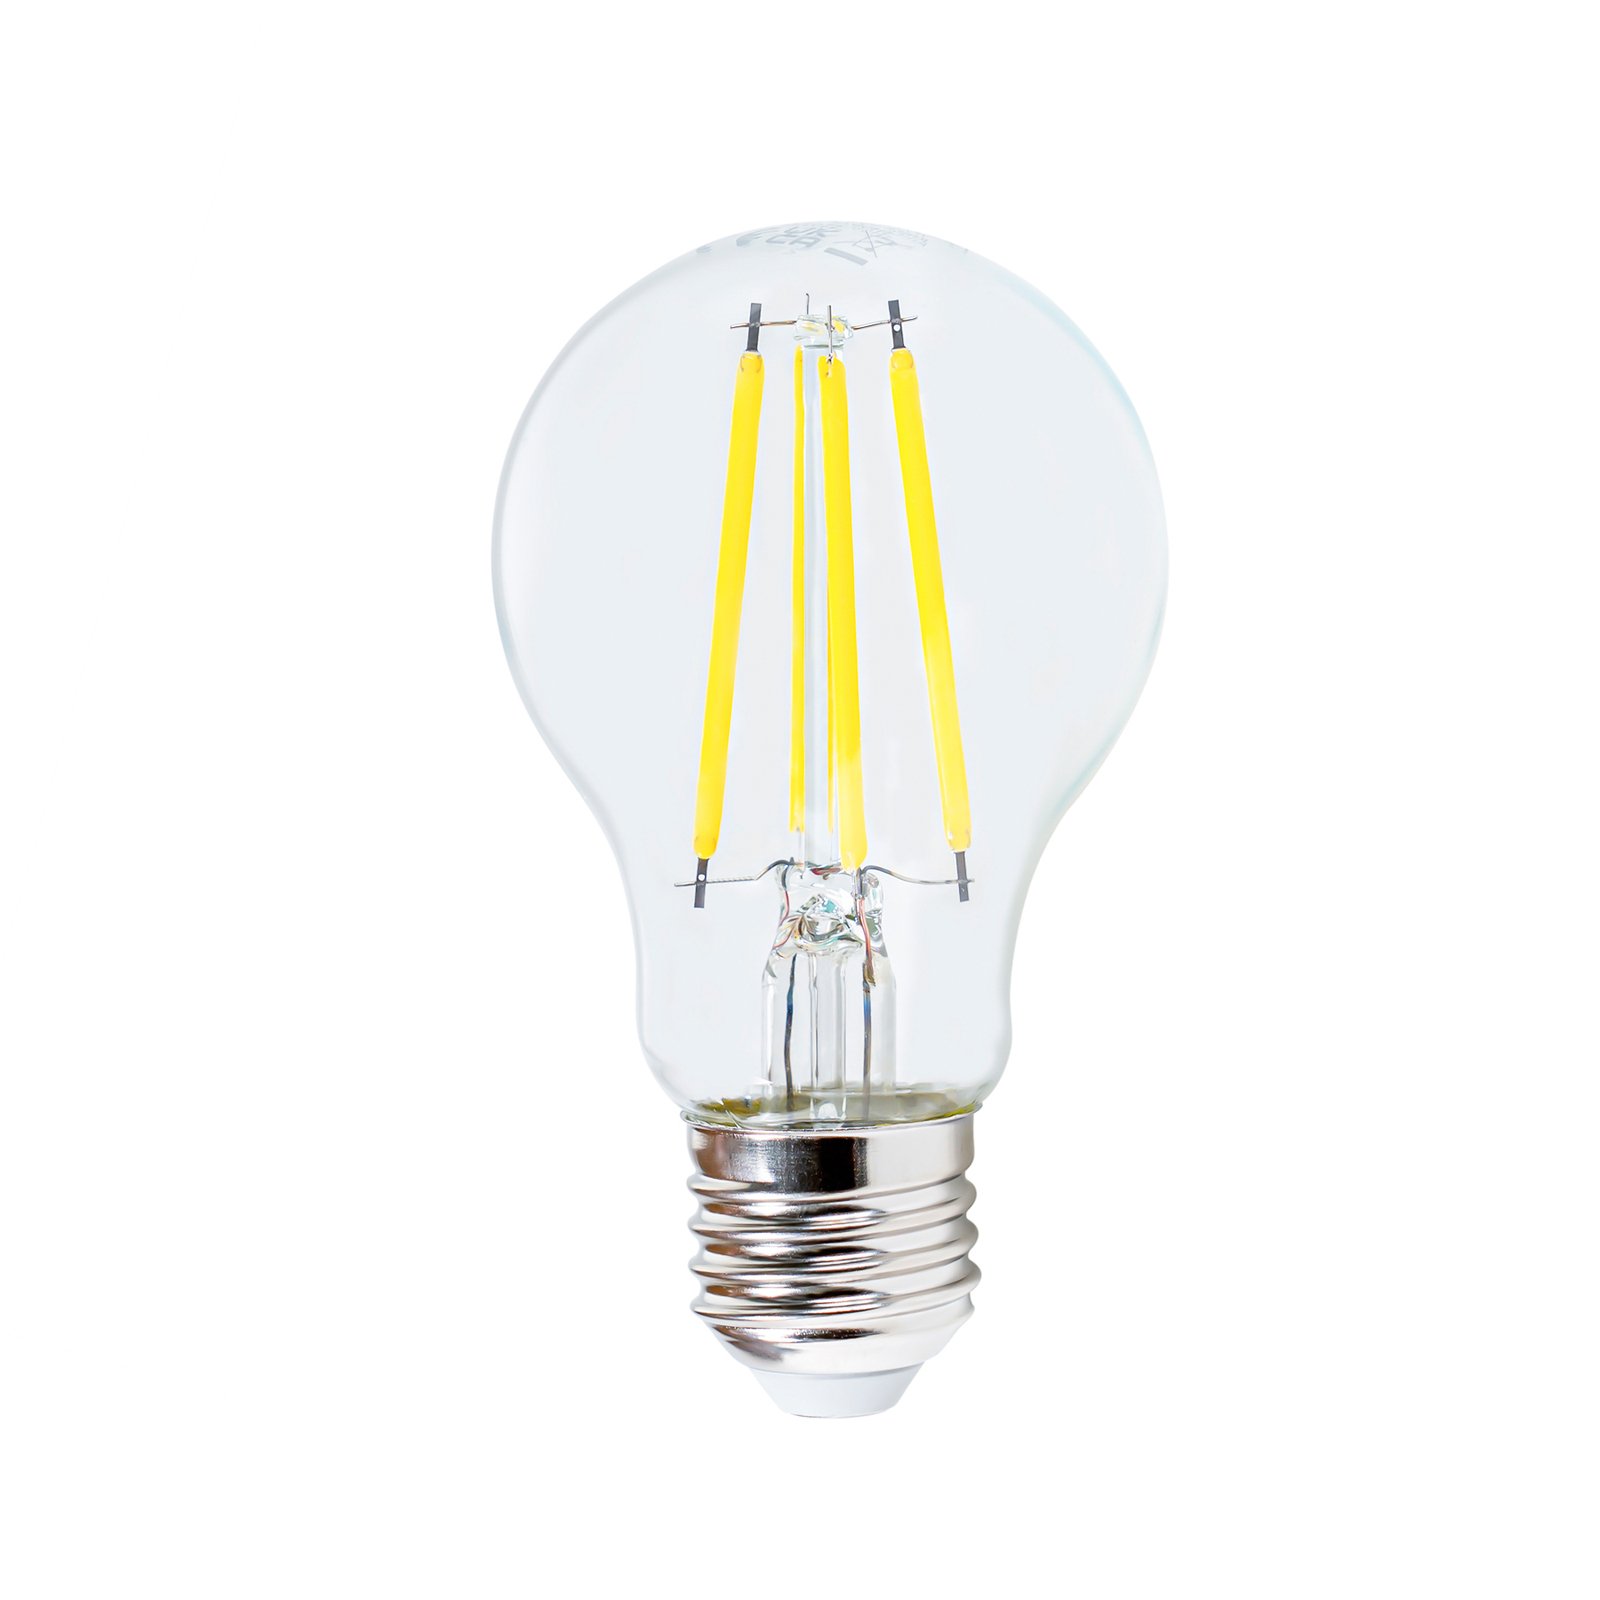 LED filament lamp E27 3.8W 3.000K, 806 lumen, helder